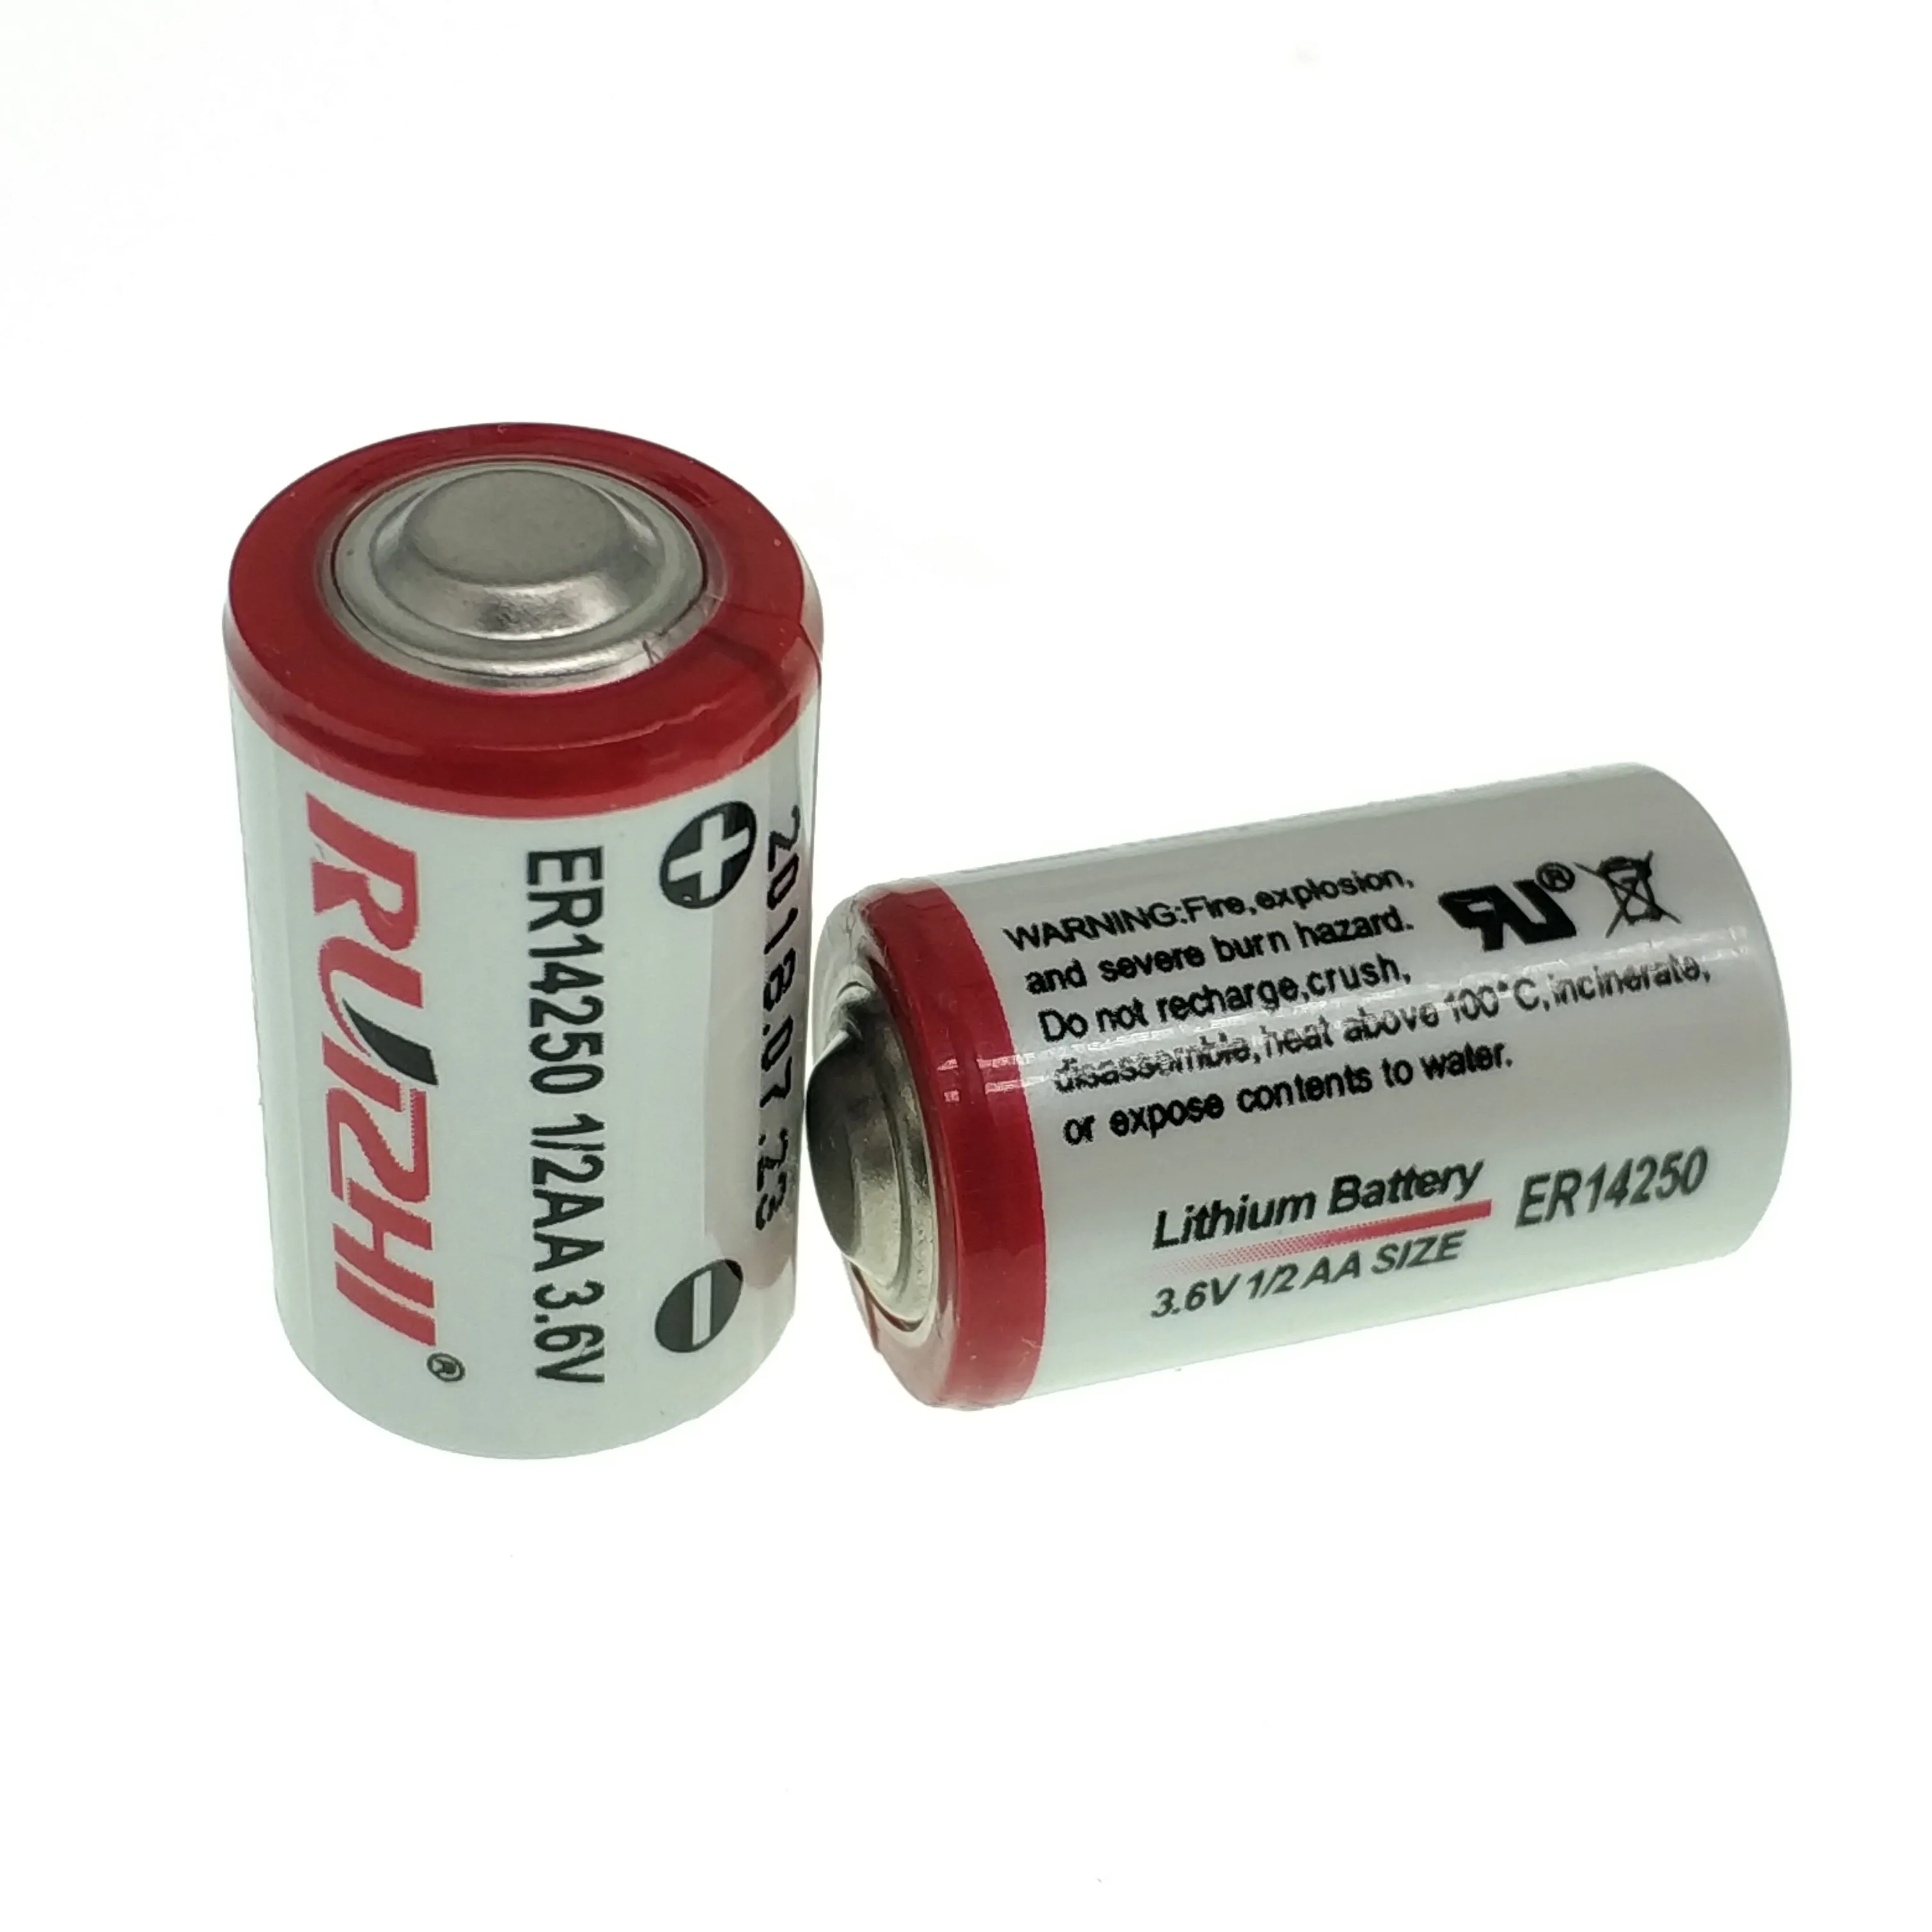 un38.3 approved 3.6v lithium battery er14250